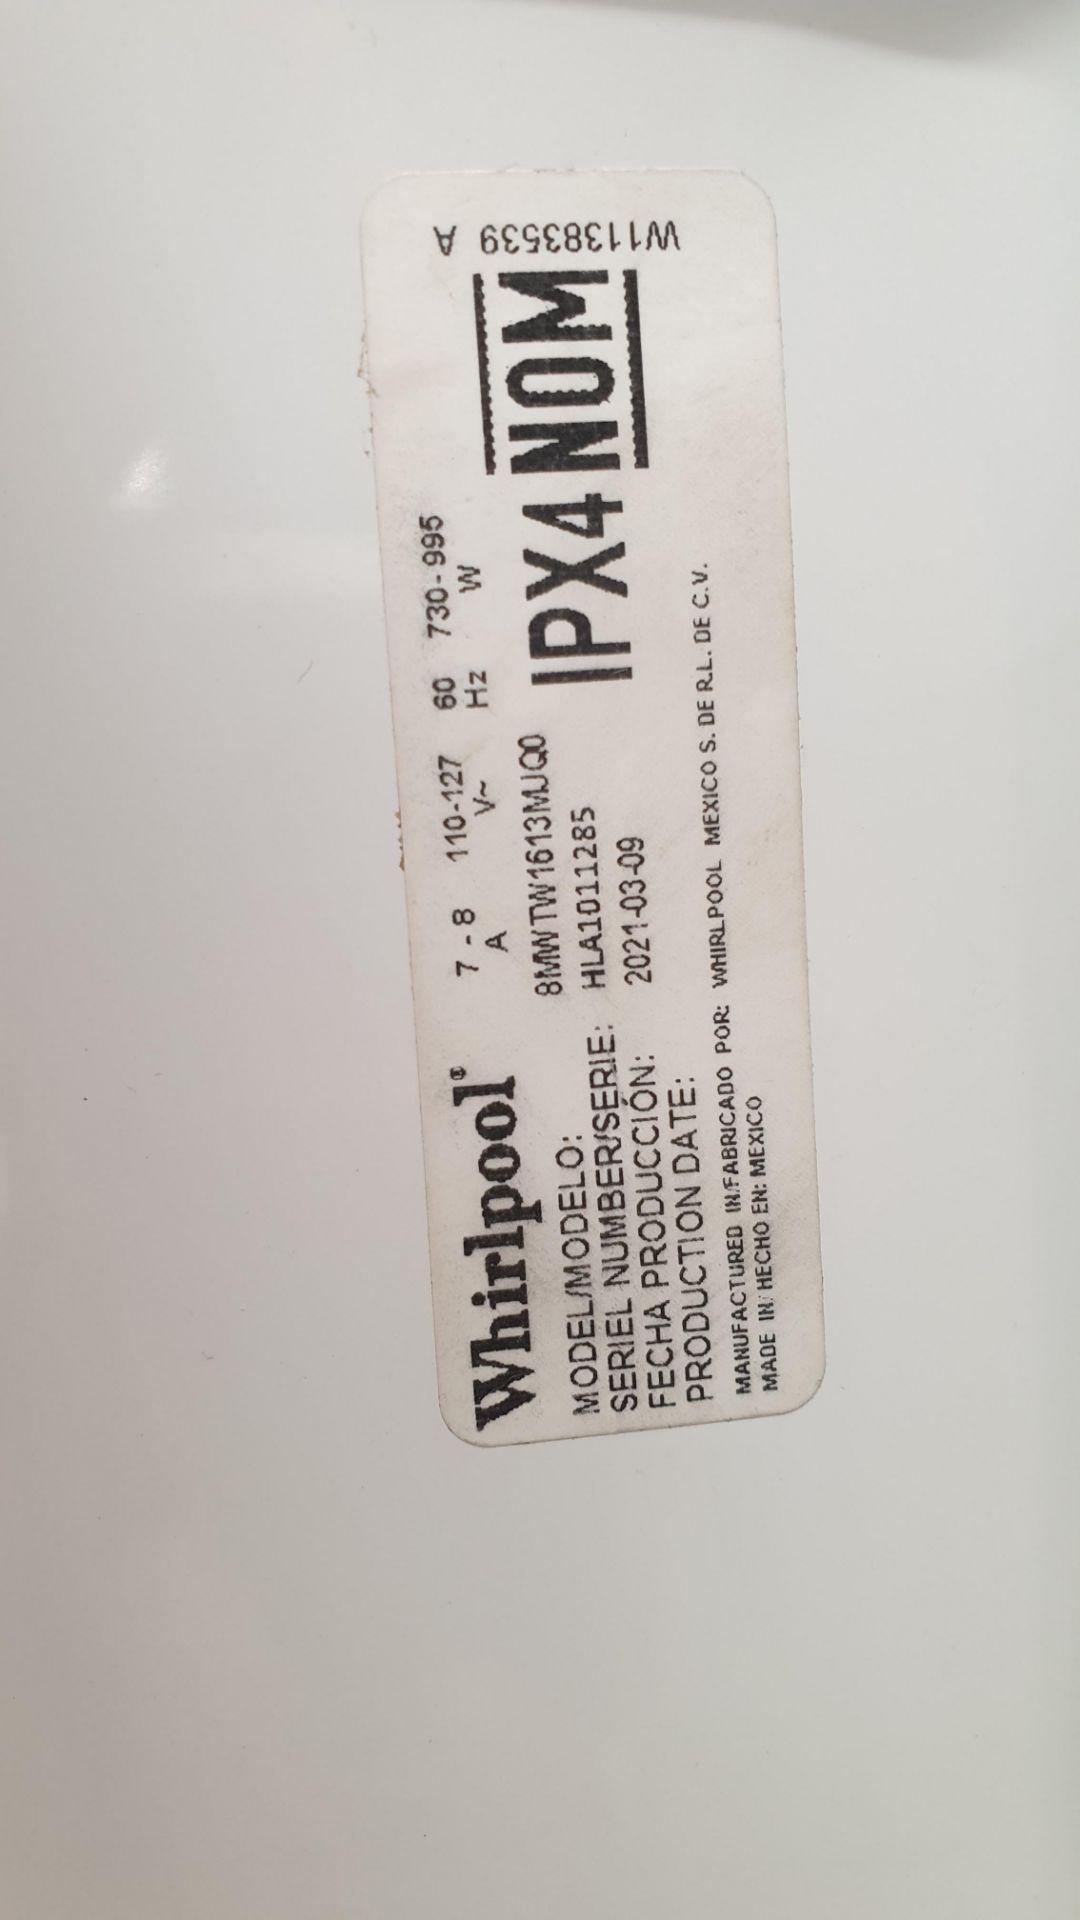 1 Lavadora marca Whirlpool de 16 kilos color blanco modelo 8MWTW1613MJQ0 - Image 8 of 8